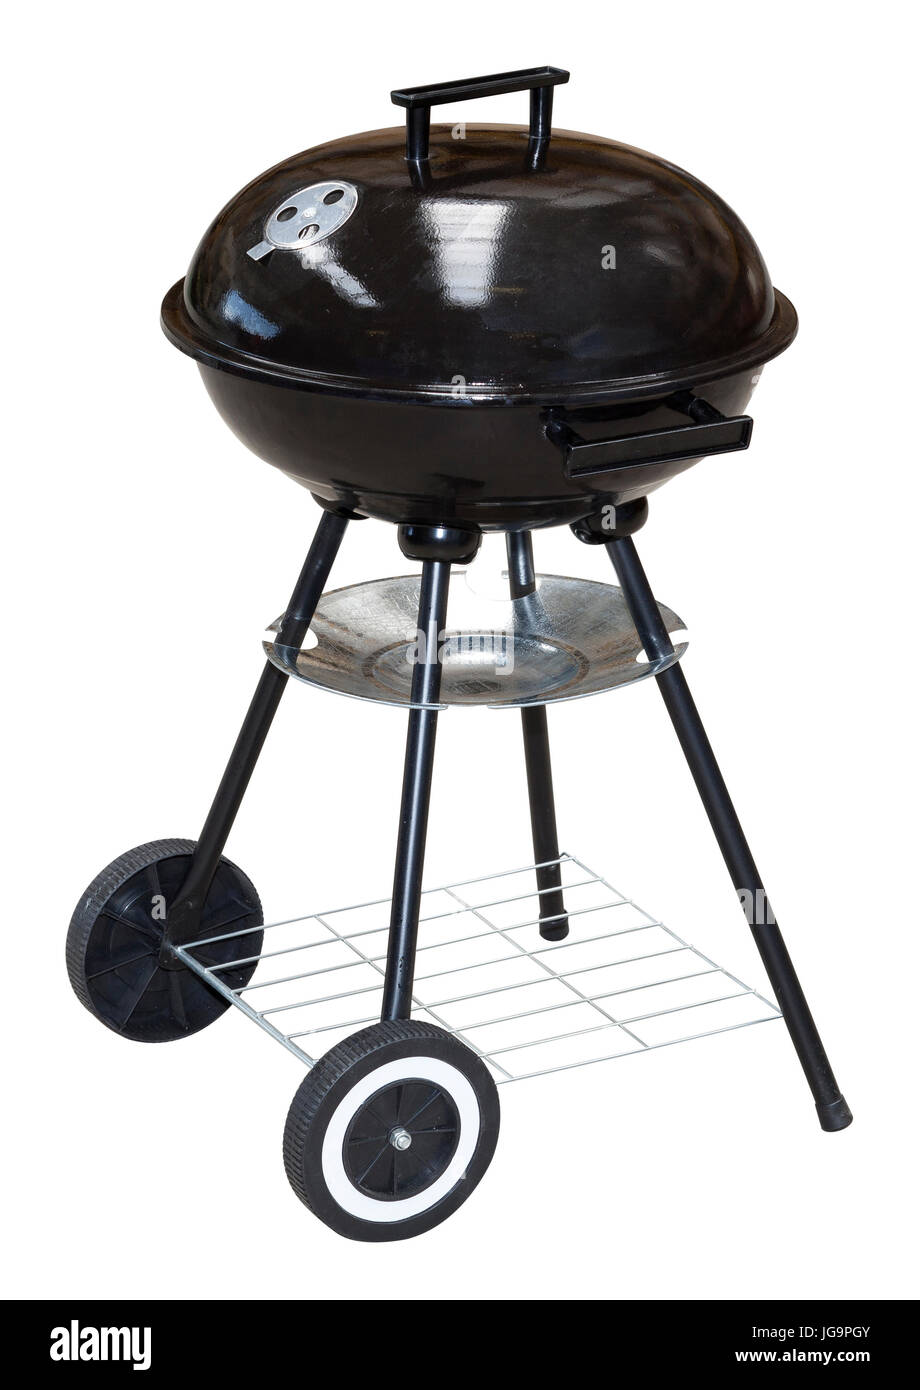 Carrello nero carbone di legna per barbecue grill barbecue sul bianco con percorso di clipping incluso Foto Stock